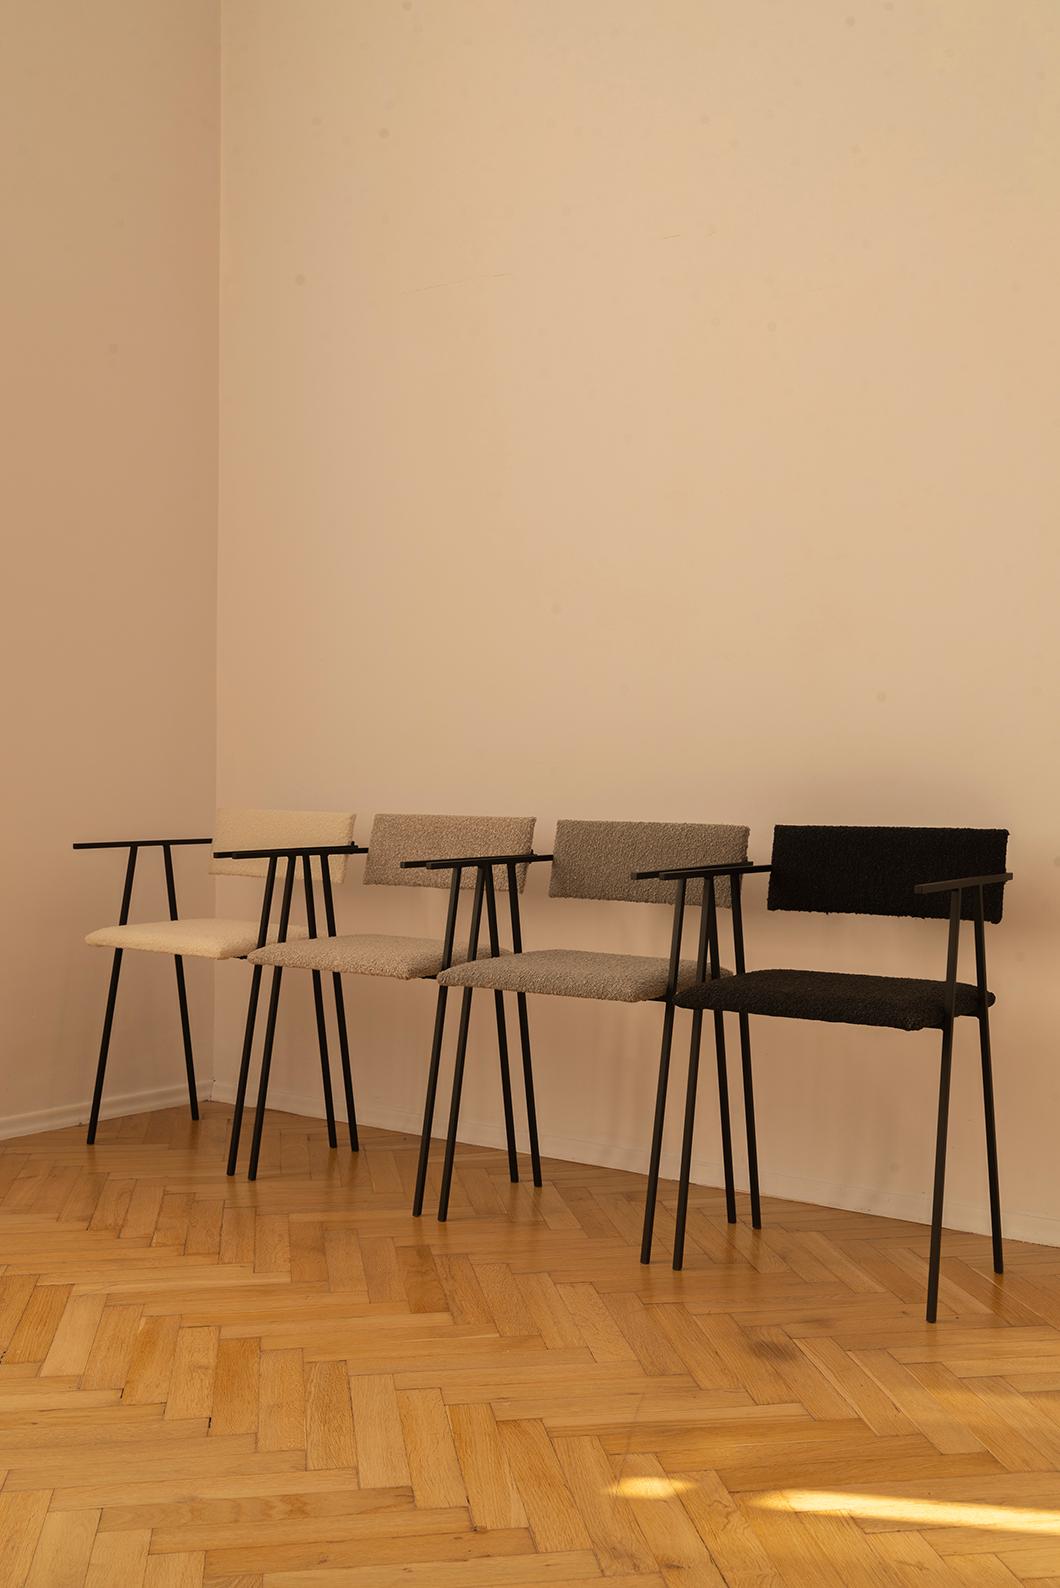 Ensemble de 4 chaises object 058 par NG Design/One
Dimensions : D 45 x L 42 x H 75 cm
Matériaux : Acier peint par poudrage, revêtement Boucle.

Egalement disponible : Tous les objets sont disponibles en différents matériaux et couleurs sur